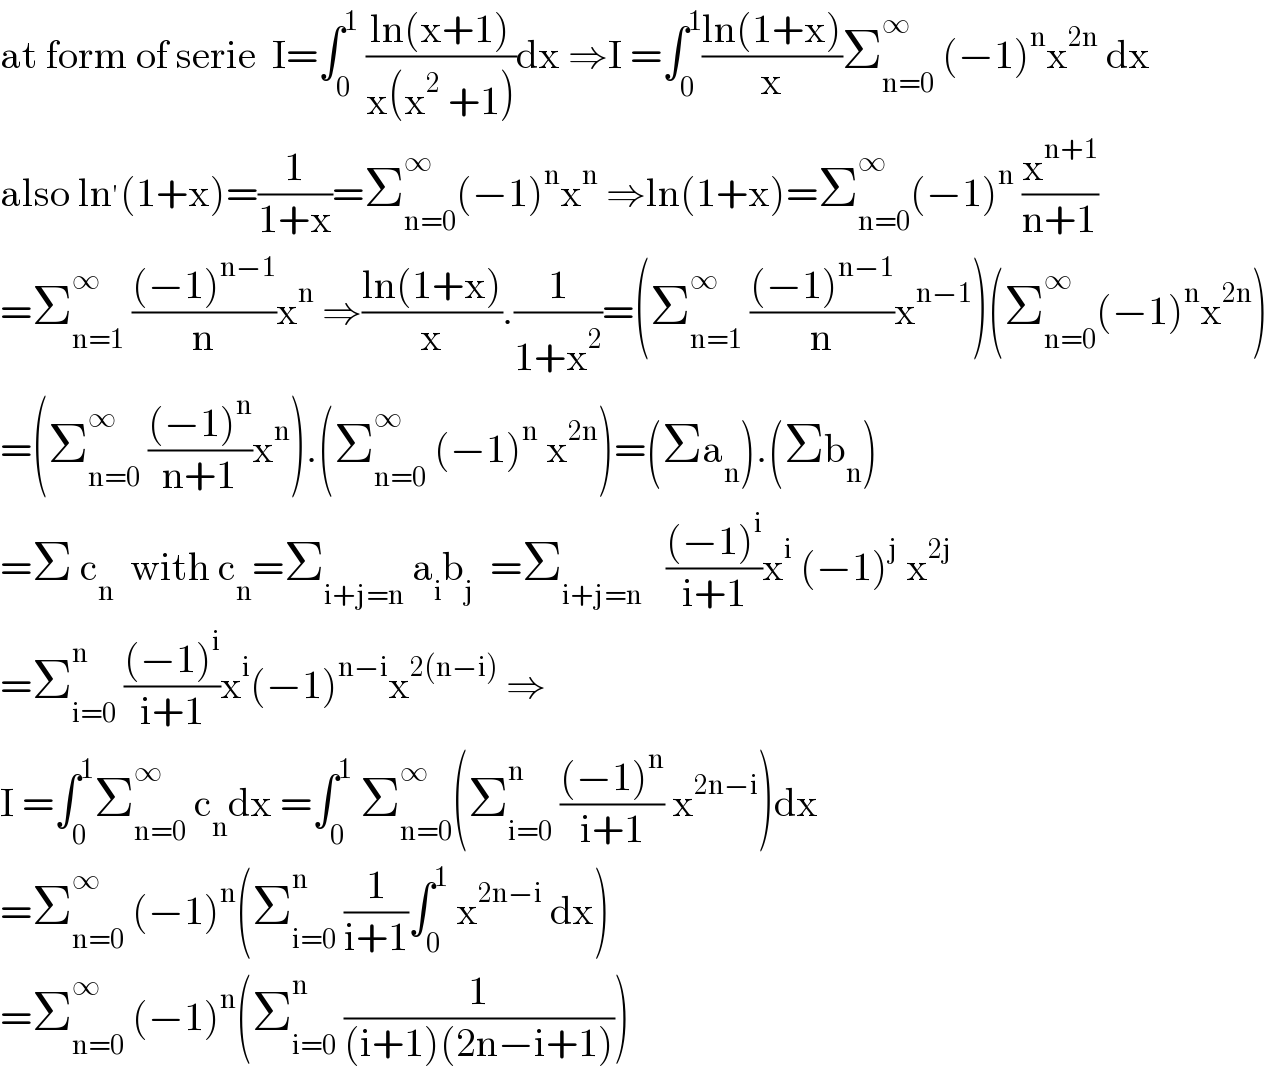 at form of serie  I=∫_0 ^1  ((ln(x+1))/(x(x^2  +1)))dx ⇒I =∫_0 ^1 ((ln(1+x))/x)Σ_(n=0) ^∞  (−1)^n x^(2n)  dx  also ln^′ (1+x)=(1/(1+x))=Σ_(n=0) ^∞ (−1)^n x^n  ⇒ln(1+x)=Σ_(n=0) ^∞ (−1)^n  (x^(n+1) /(n+1))  =Σ_(n=1) ^∞  (((−1)^(n−1) )/n)x^n  ⇒((ln(1+x))/x).(1/(1+x^2 ))=(Σ_(n=1) ^∞  (((−1)^(n−1) )/n)x^(n−1) )(Σ_(n=0) ^∞ (−1)^n x^(2n) )  =(Σ_(n=0) ^∞  (((−1)^n )/(n+1))x^n ).(Σ_(n=0) ^∞  (−1)^n  x^(2n) )=(Σa_n ).(Σb_n )  =Σ c_n   with c_n =Σ_(i+j=n)  a_i b_j   =Σ_(i+j=n)    (((−1)^i )/(i+1))x^i  (−1)^j  x^(2j)   =Σ_(i=0) ^n  (((−1)^i )/(i+1))x^i (−1)^(n−i) x^(2(n−i))  ⇒  I =∫_0 ^1 Σ_(n=0) ^∞  c_n dx =∫_0 ^1  Σ_(n=0) ^∞ (Σ_(i=0) ^n  (((−1)^n )/(i+1)) x^(2n−i) )dx  =Σ_(n=0) ^∞  (−1)^n (Σ_(i=0) ^n  (1/(i+1))∫_0 ^1  x^(2n−i)  dx)  =Σ_(n=0) ^∞  (−1)^n (Σ_(i=0) ^n  (1/((i+1)(2n−i+1))))  